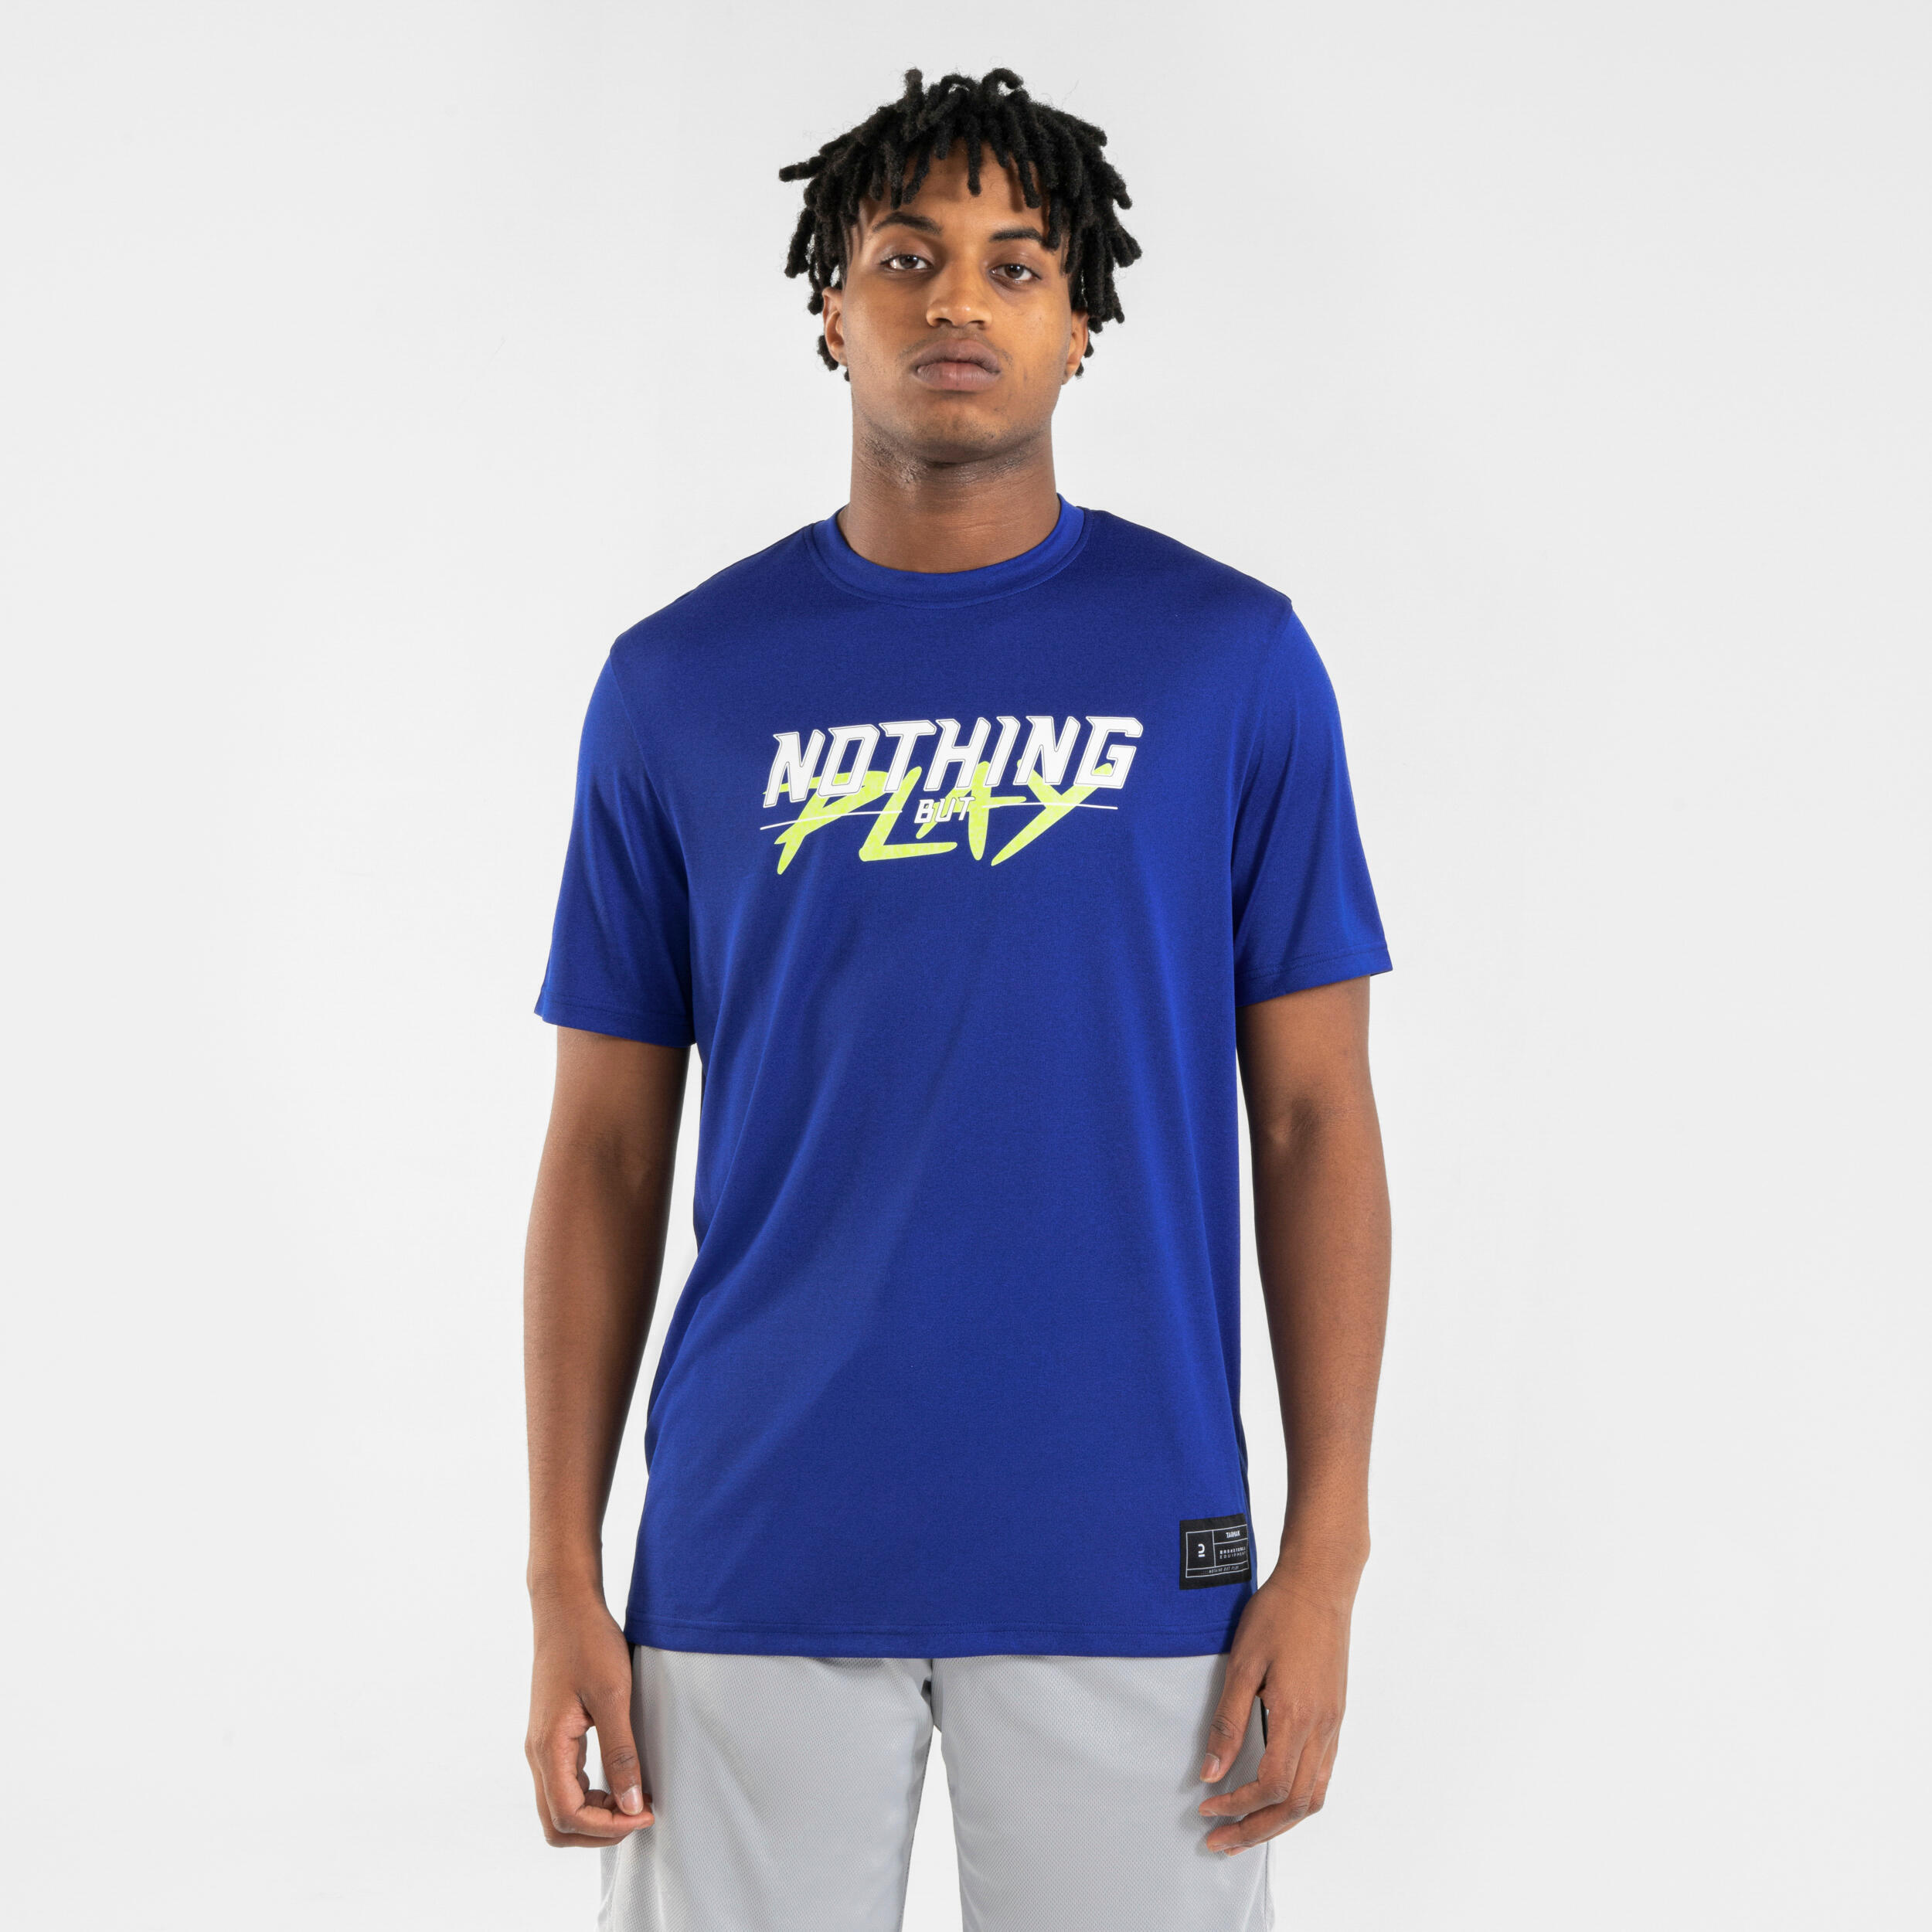 Men's/Women's Basketball T-Shirt/Jersey TS500 Fast - Blue 1/7